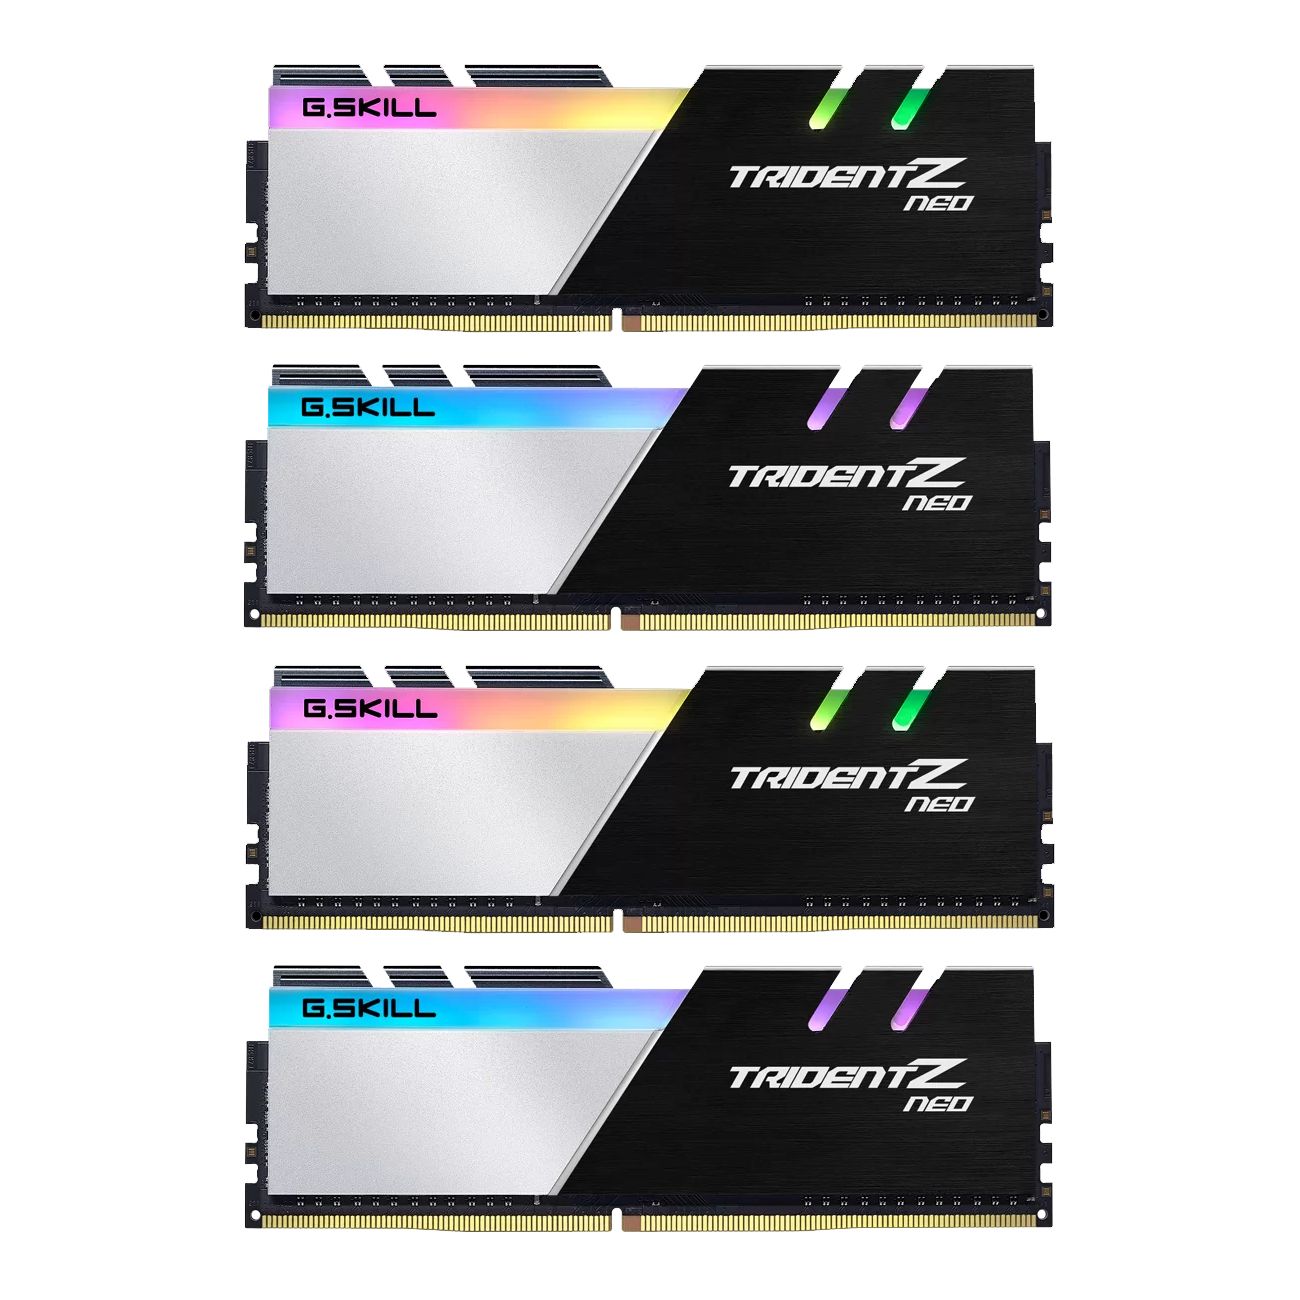 Memorie G.SKILL F4-3200C14Q-32GTZN G.Skill Trident Z Neo (pentru AMD) DDR4 32GB (4x8GB) 3200MHz CL14 1.35V XMP 2.0_1